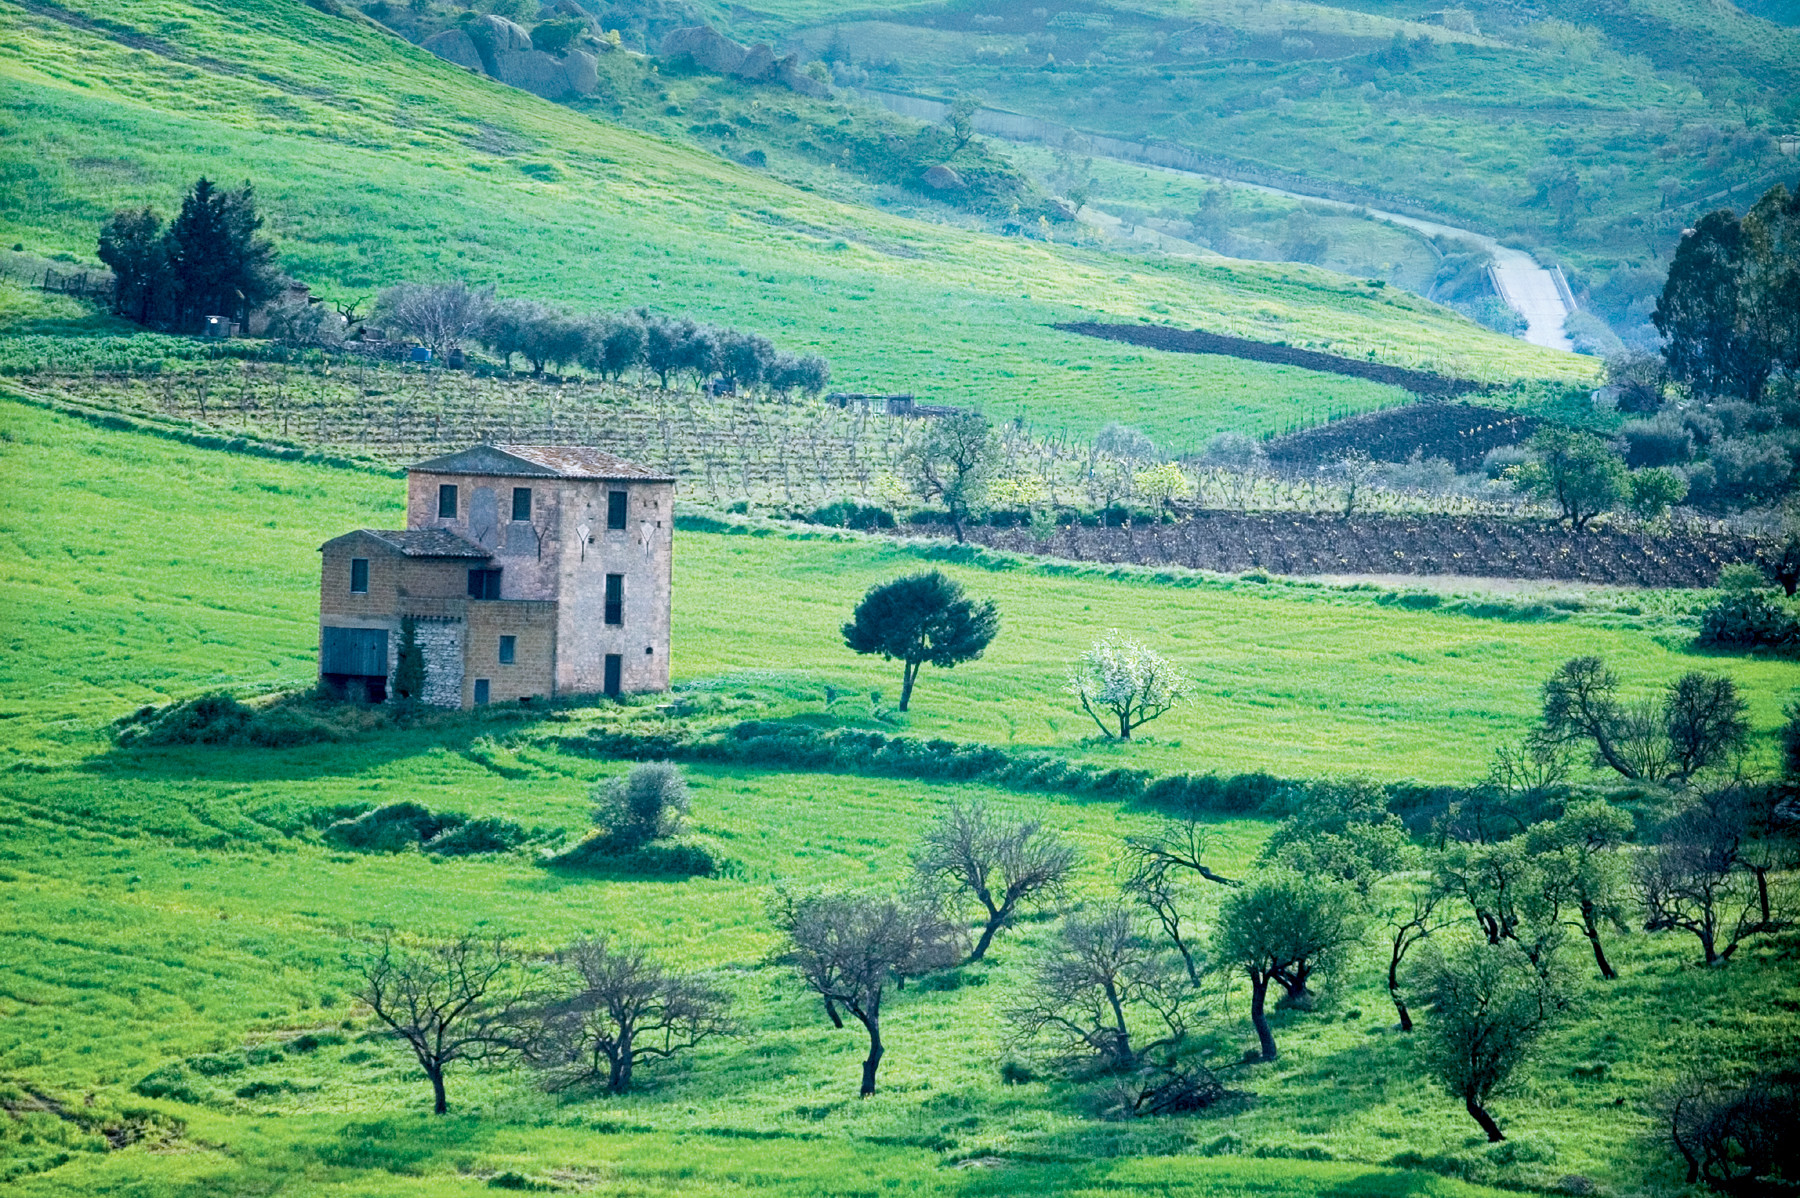 Het lieflijke landschap rondom het dorpje Sant' Angelo nodigt uit tot wandelen. Foto: Louise ten Have